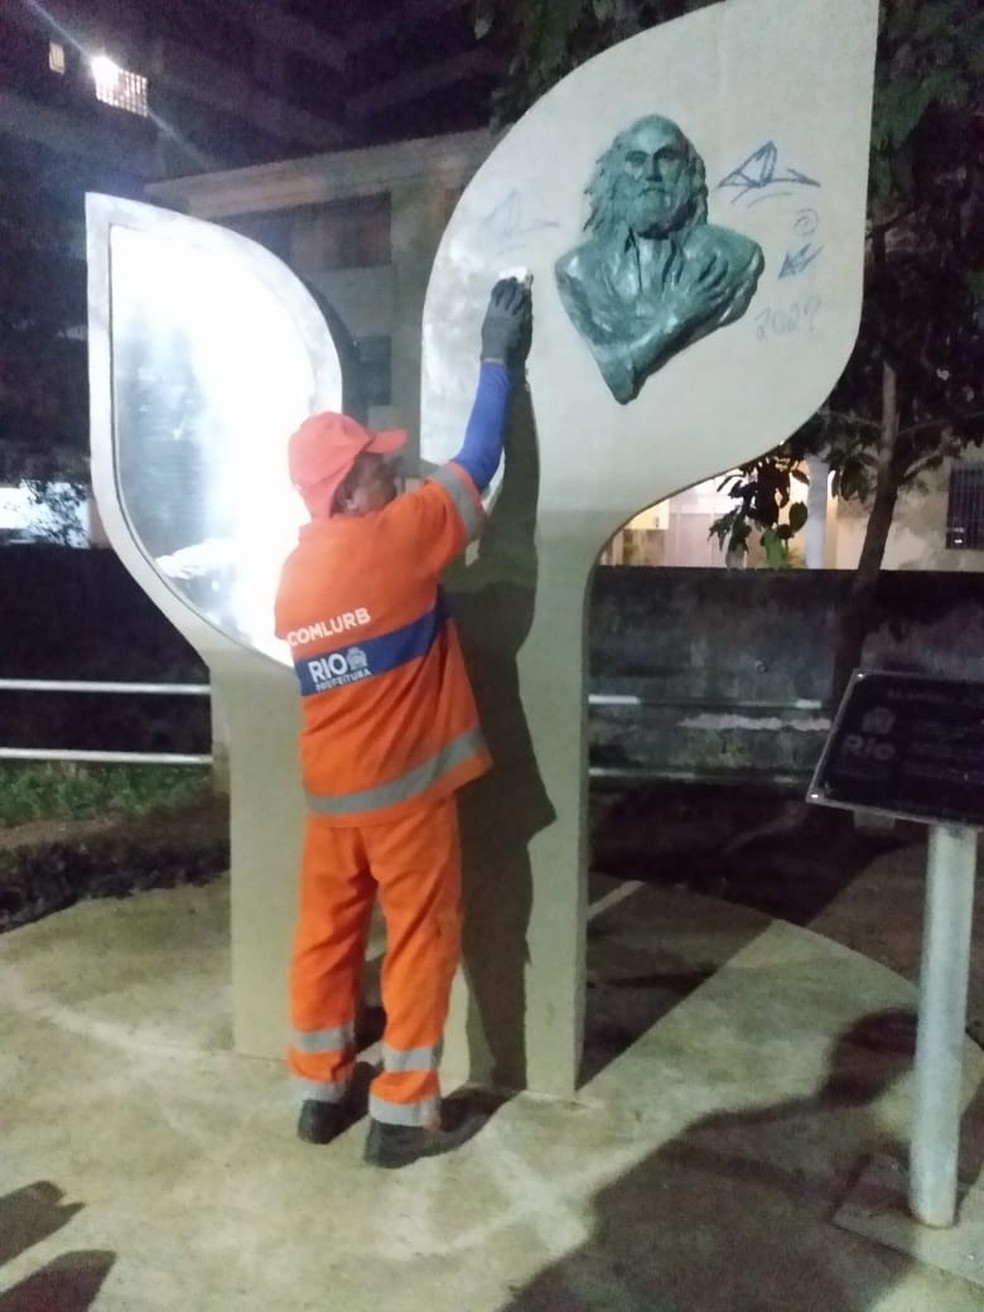 Equipes da Comlurb removeram as pichações na estátua de Aldir Blanc neste domingo (21) — Foto: Divulgação